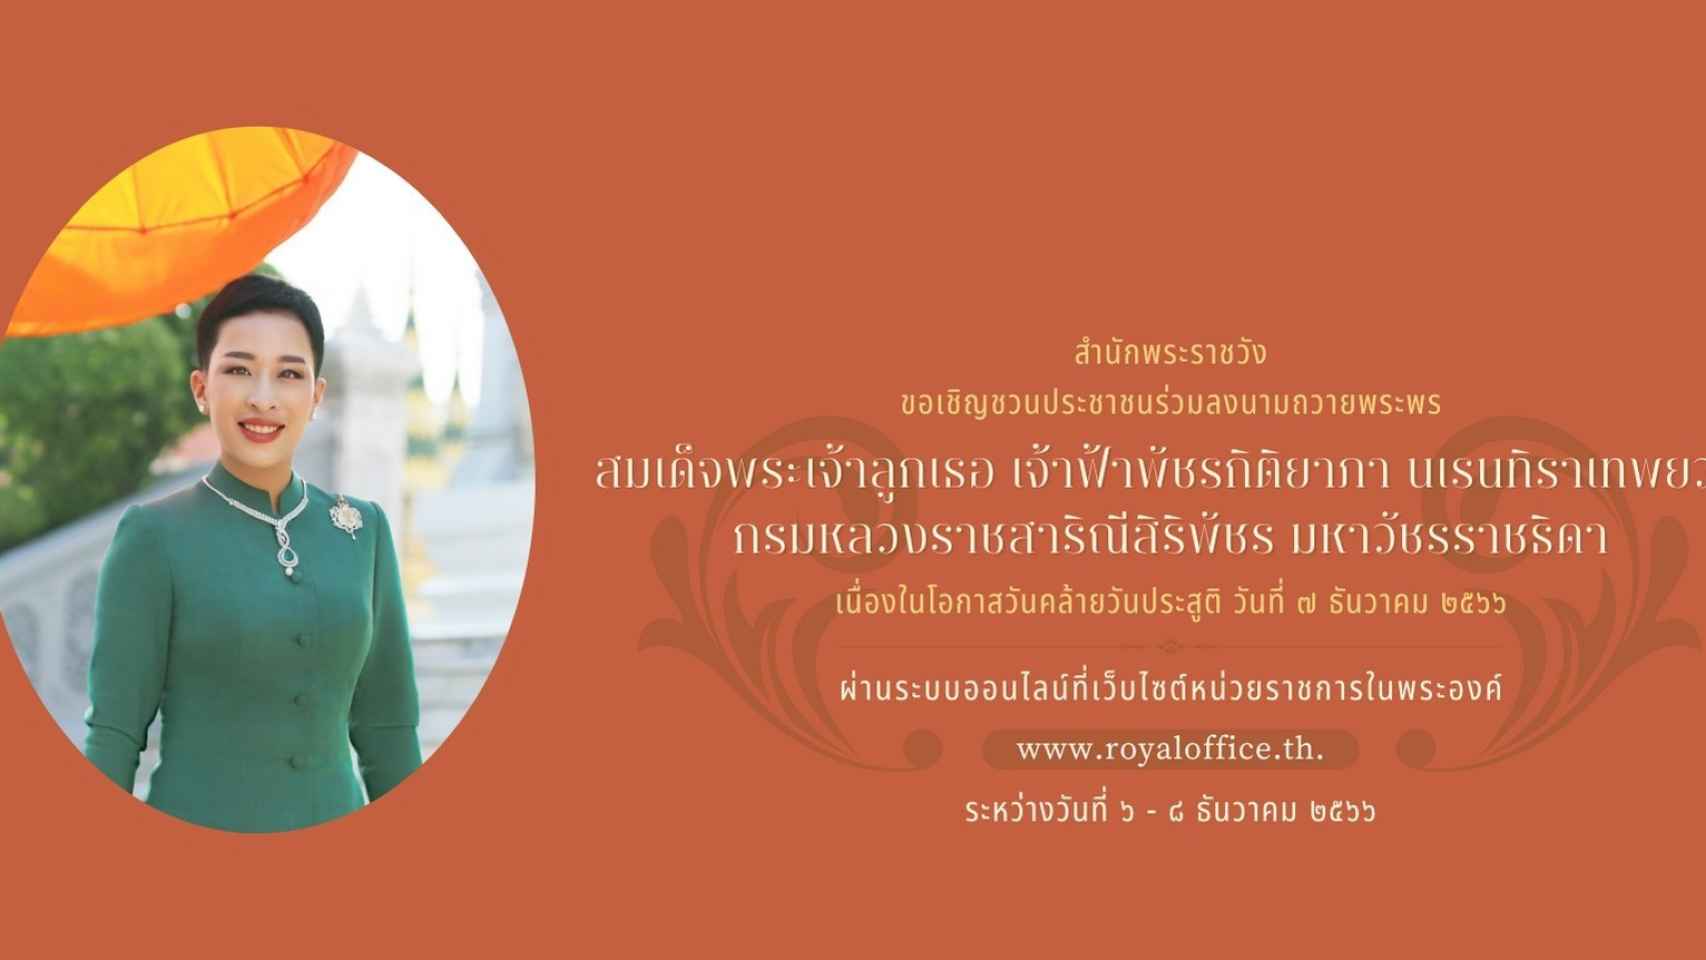 Mensaje de la Casa Real tailandesa sobre el cumpleaños de la princesa.